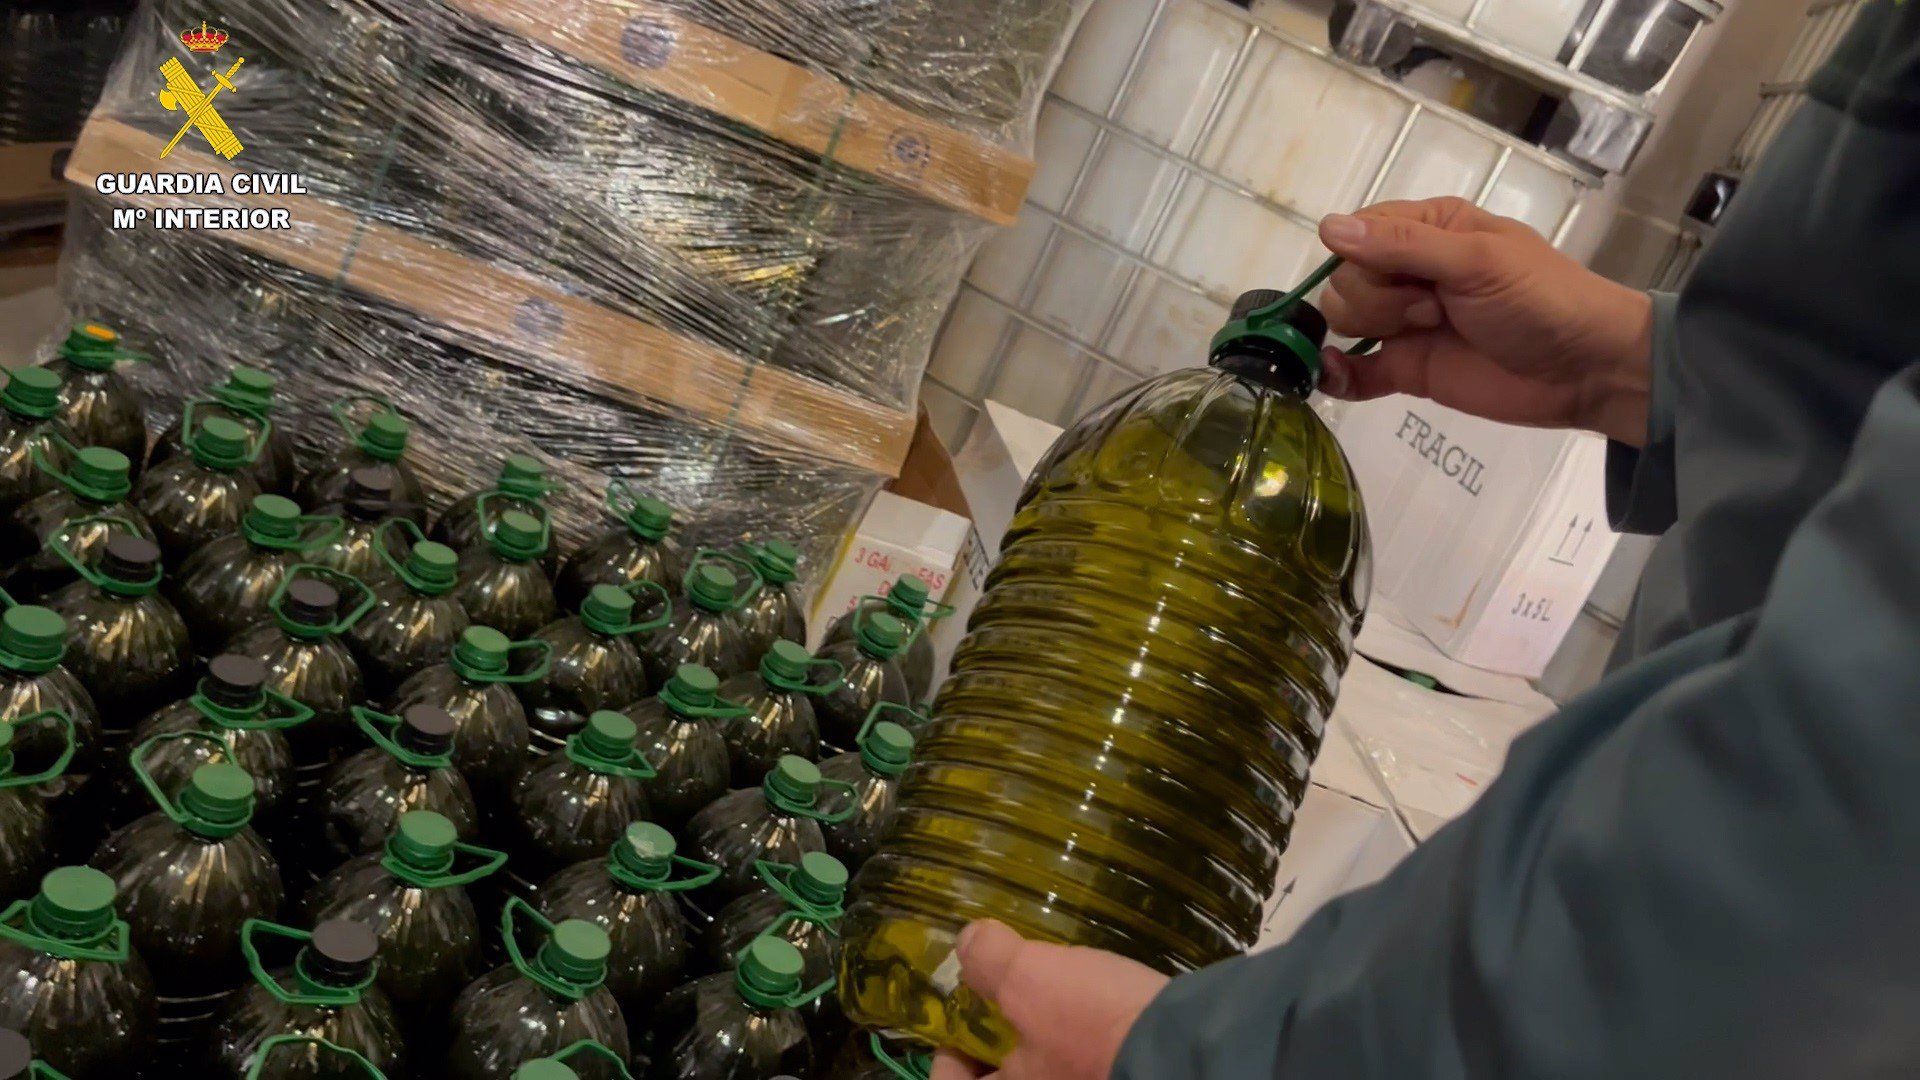 Aceite inmovilizado por la Guardia Civil que se vendía como de oliva virgen extra y era una mezcla de aceite de semillas y de orujo. - GUARDIA CIVIL